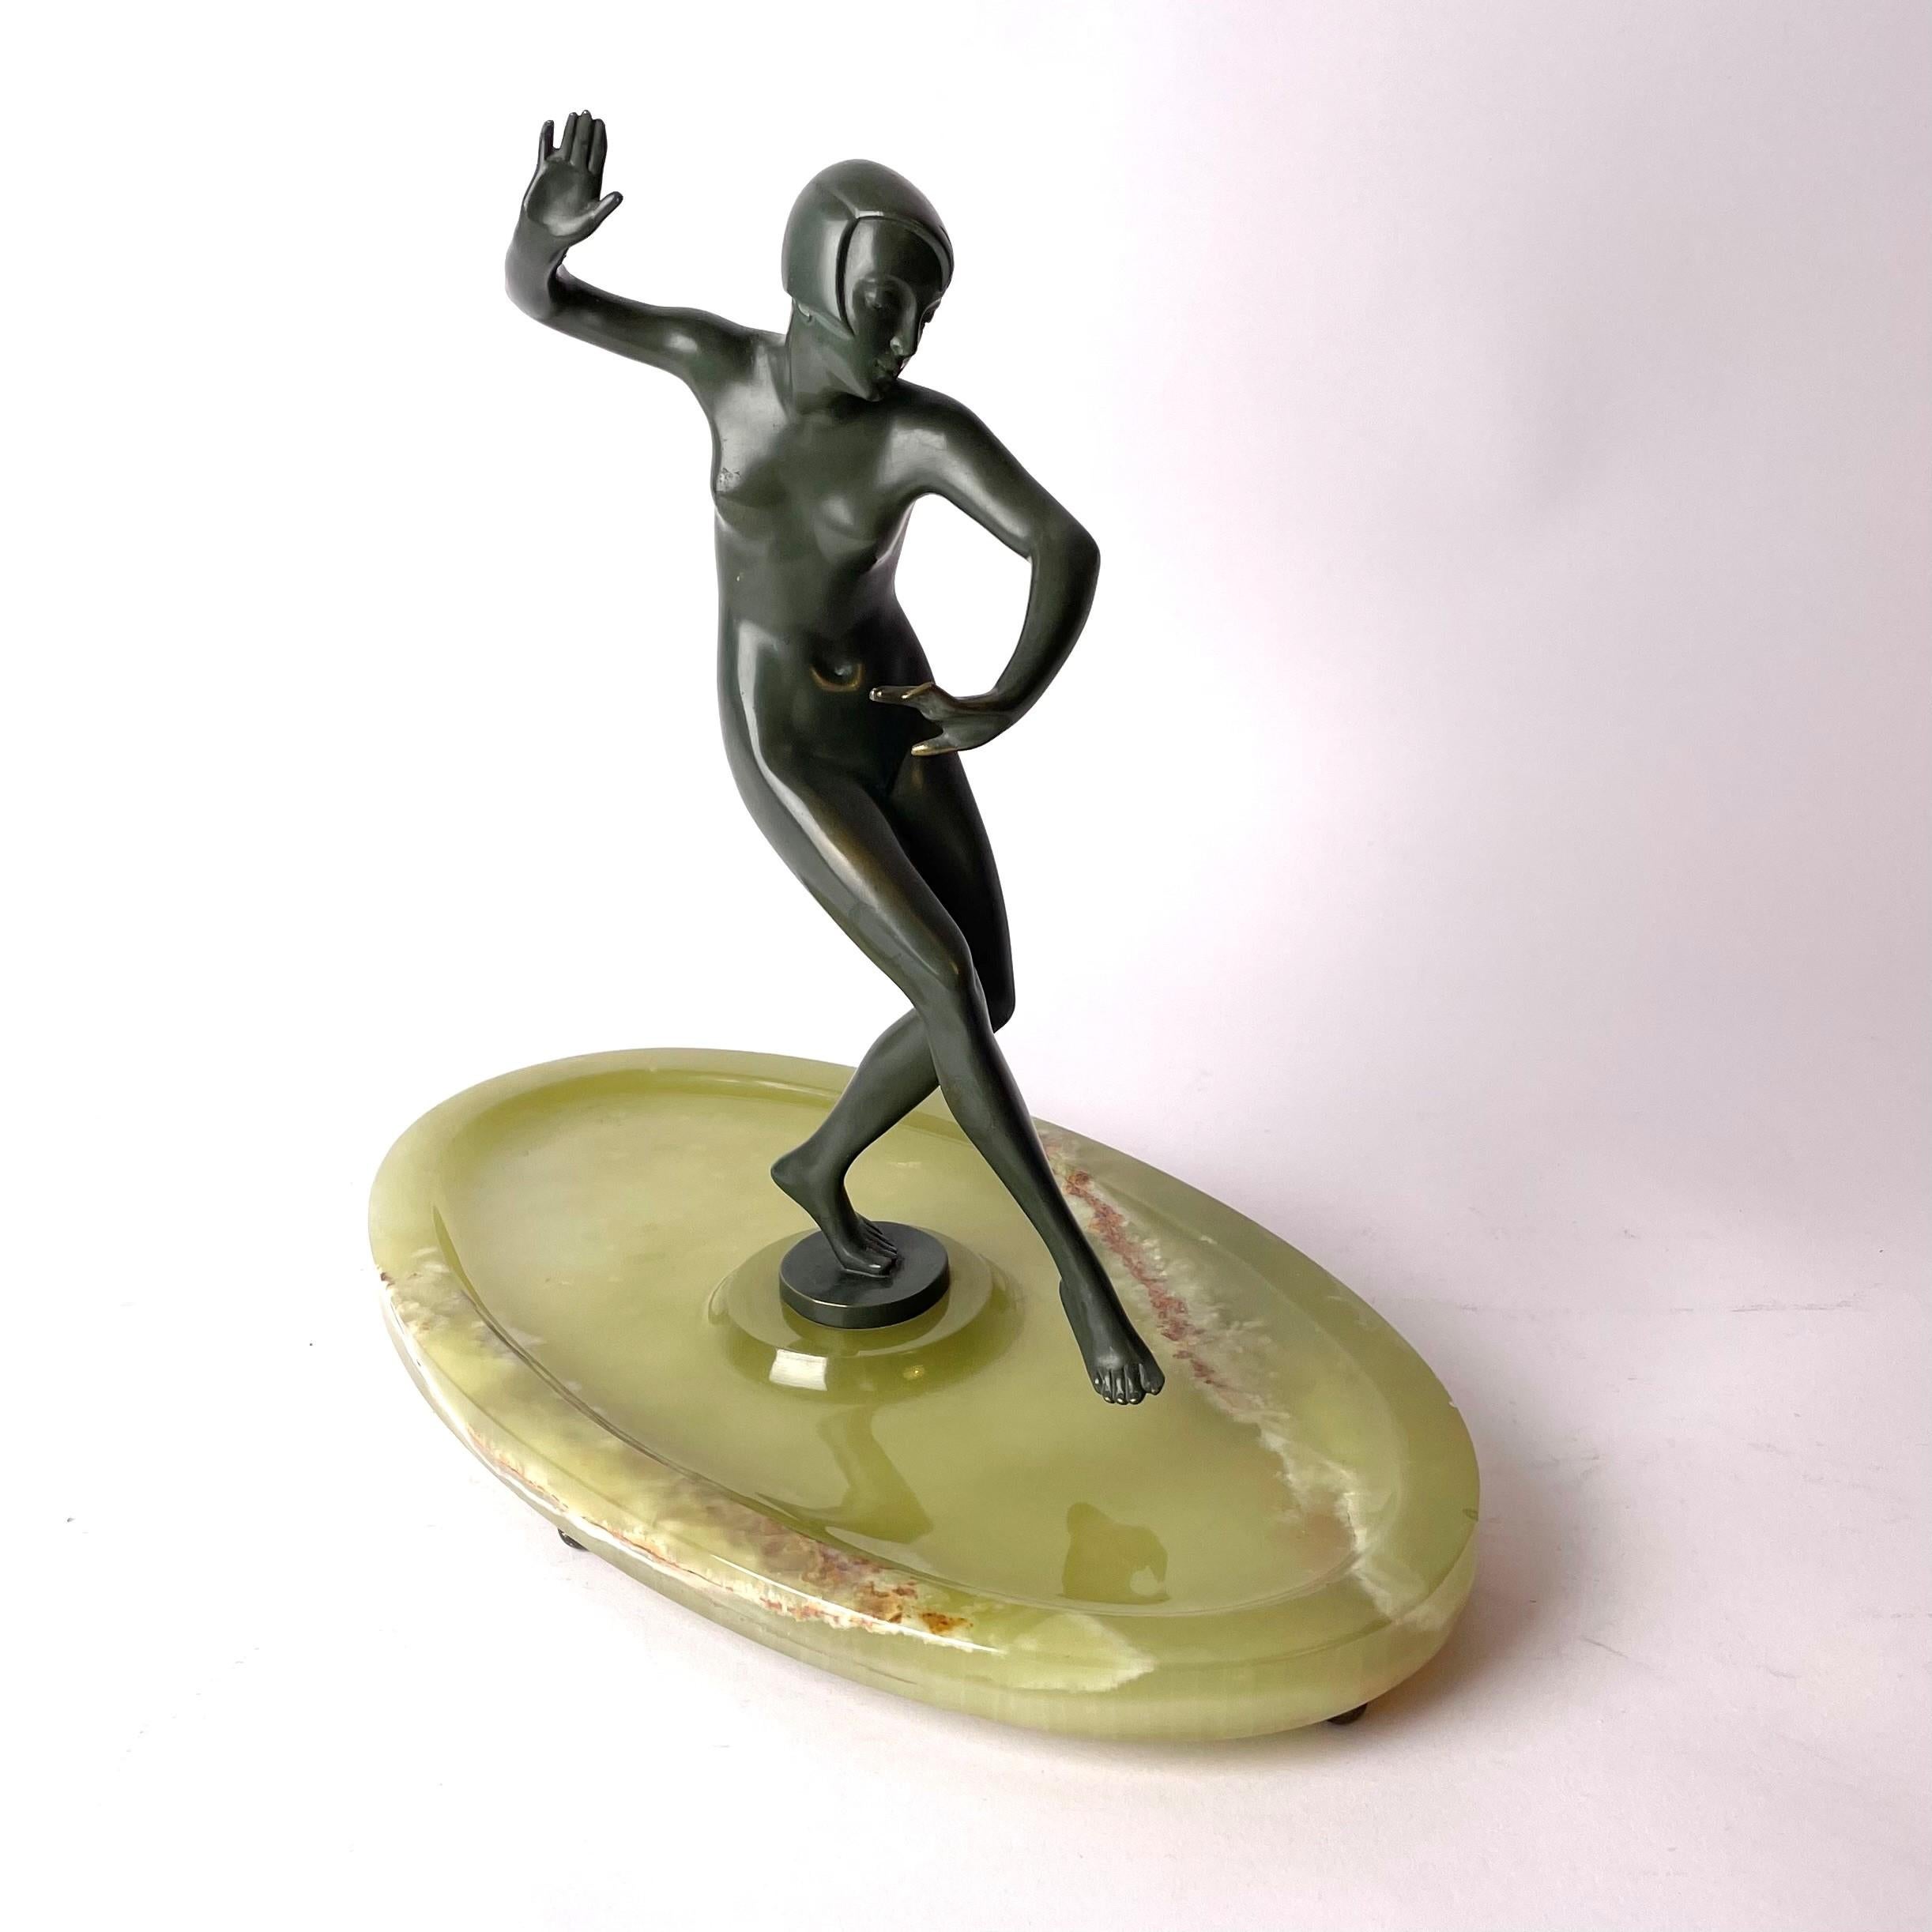 Elégante sculpture art déco de Johann Wolfgang Elischer (Autriche 1891-1966). Réalisé en bronze coloré avec une base en onyx. Art Déco vers les années 1920 et signé dans la base en bronze.

Usure conforme à l'âge et à l'utilisation.